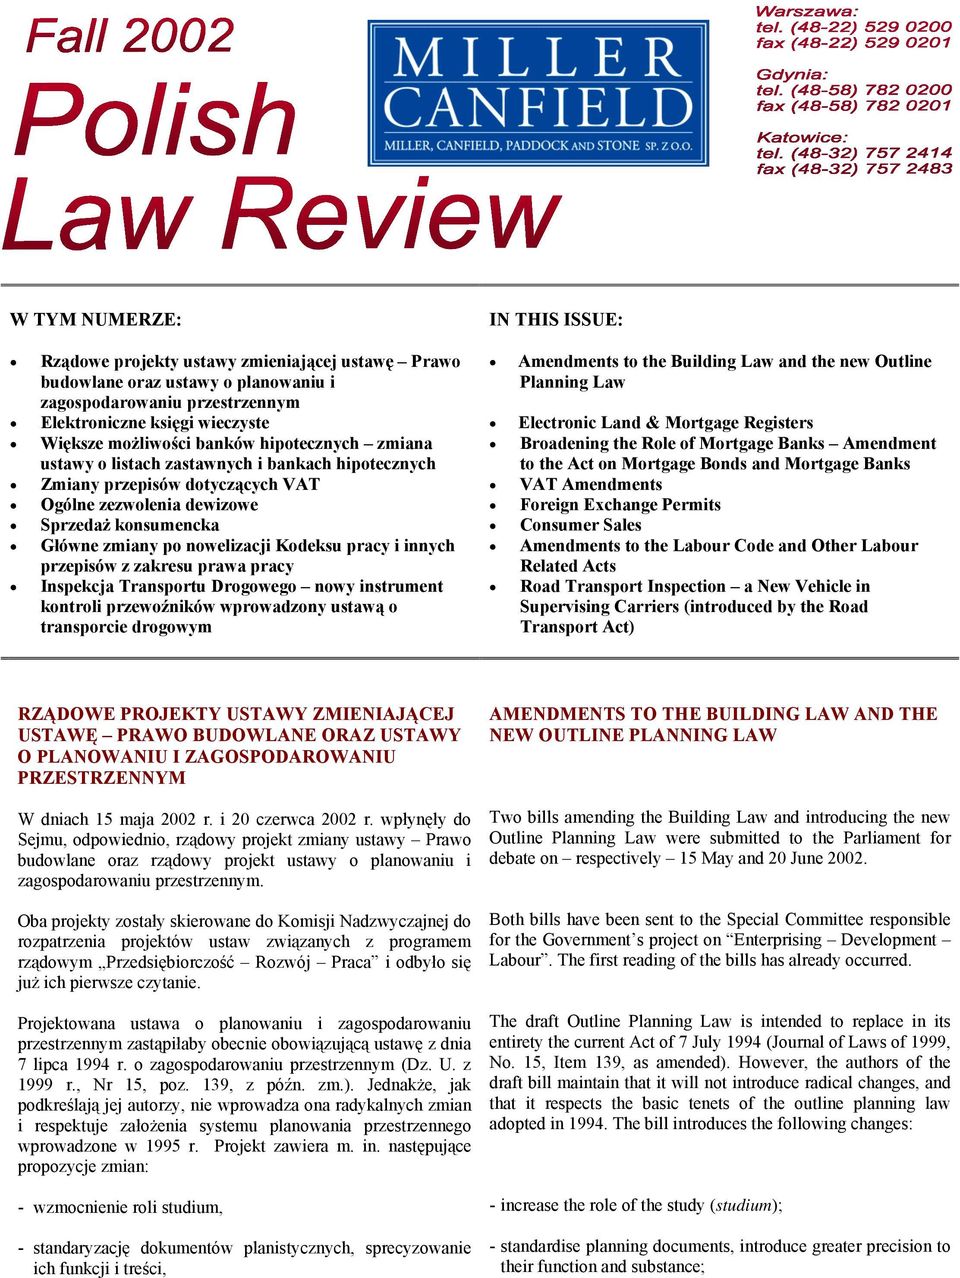 innych przepisów z zakresu prawa pracy Inspekcja Transportu Drogowego nowy instrument kontroli przewoźników wprowadzony ustawą o transporcie drogowym IN THIS ISSUE: Amendments to the Building Law and